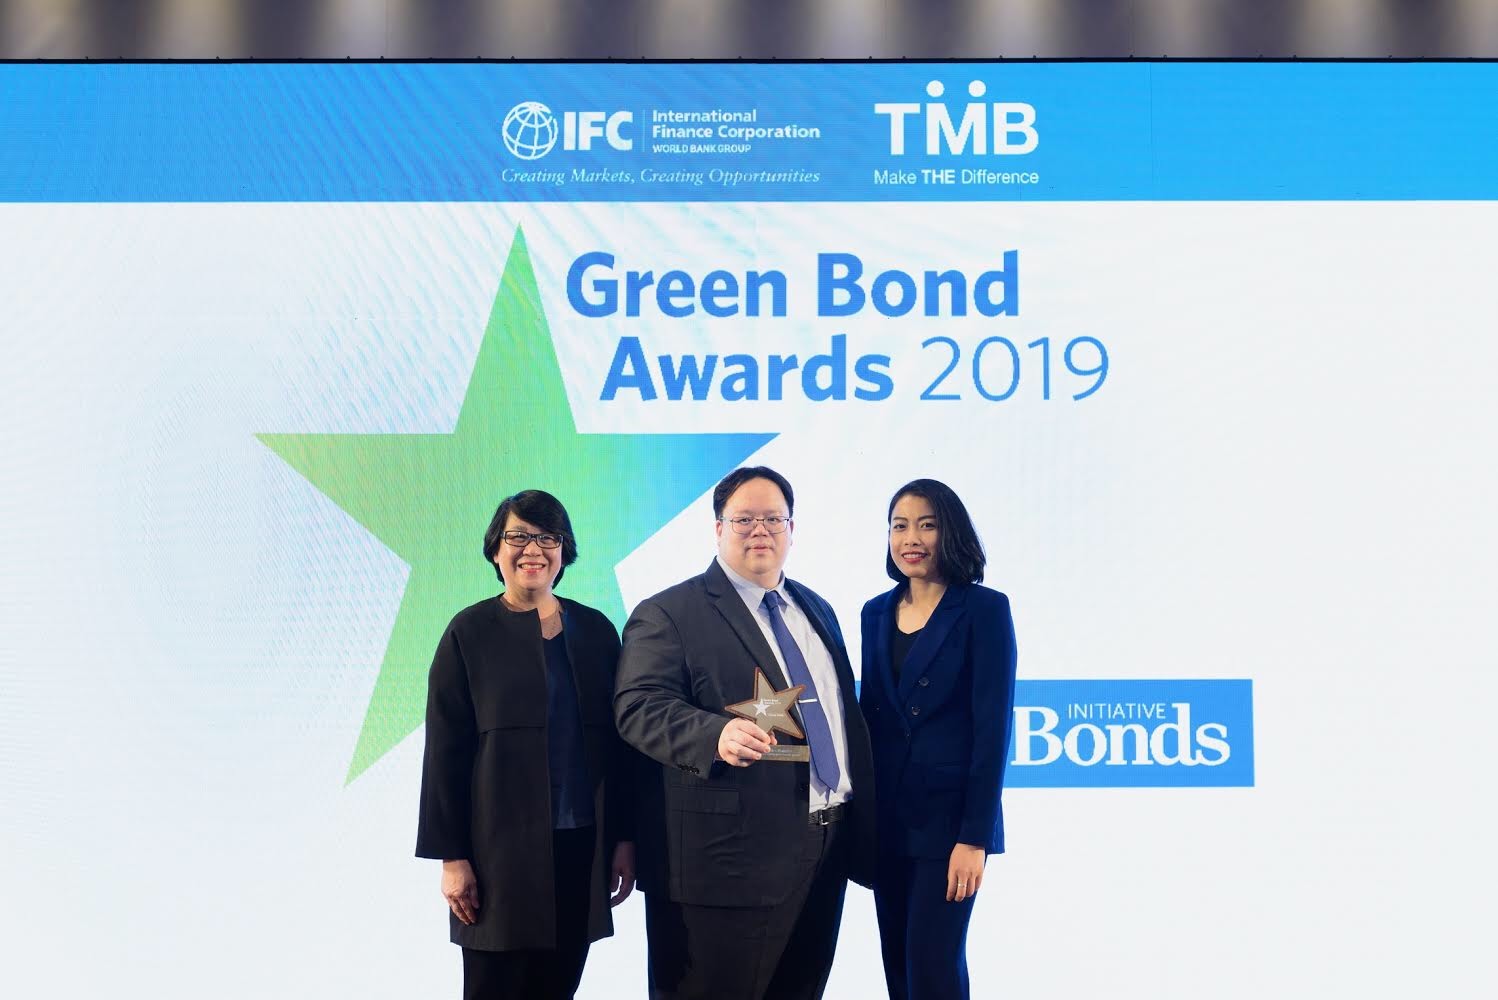 ทีเอ็มบี รับรางวัล ผู้บุกเบิกพันธบัตรสีเขียว Green Bond Pioneer Awards